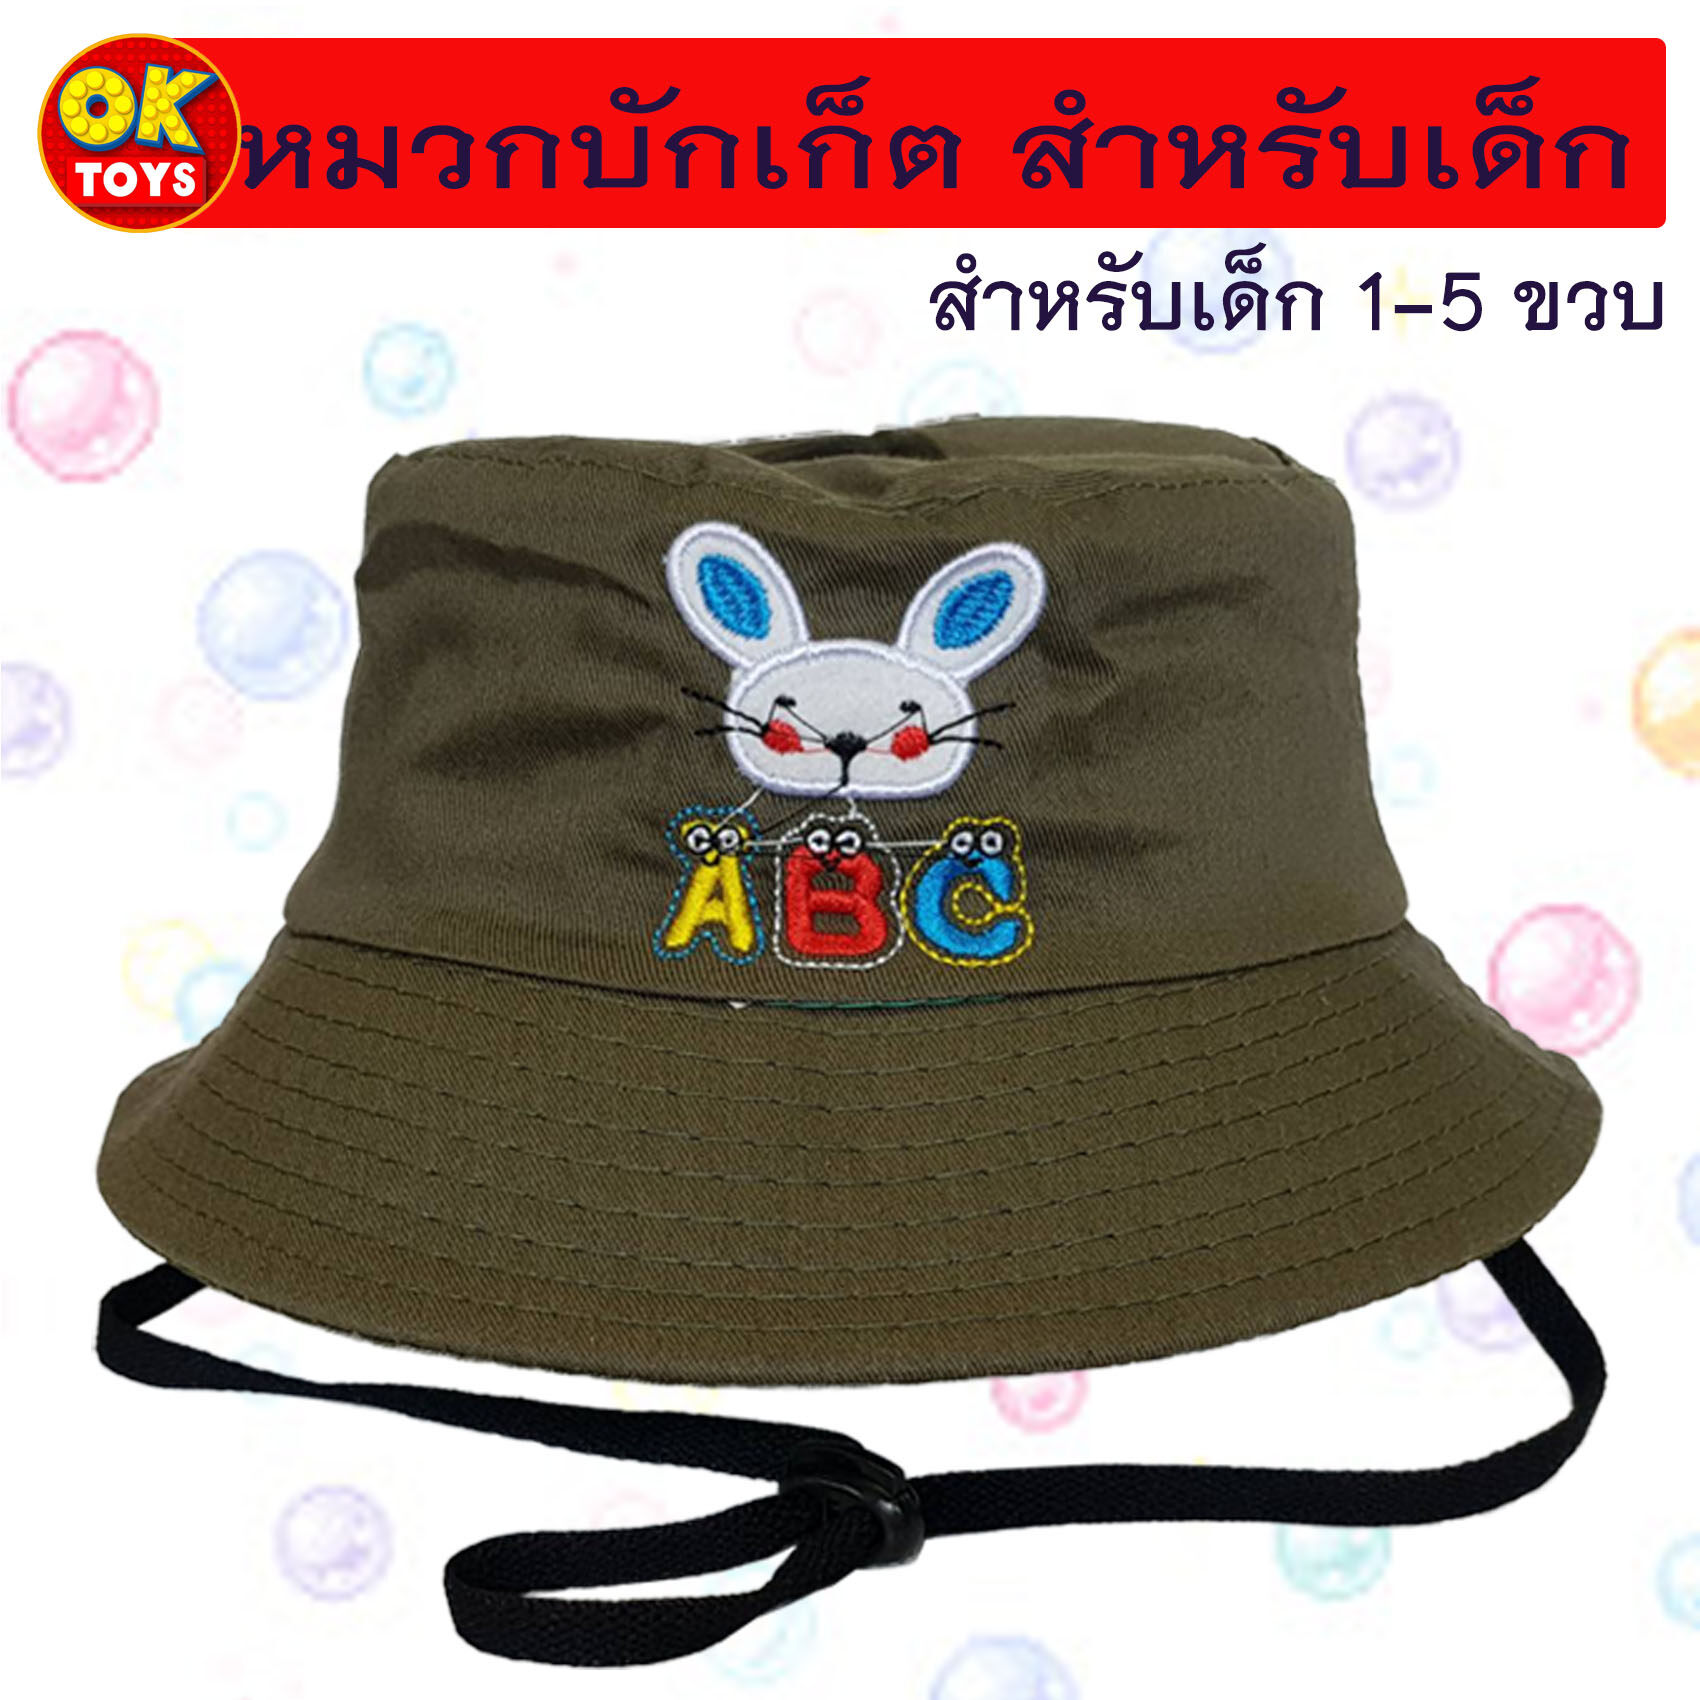 Am0035 หมวกบักเก็ตสำหรับเด็ก ลายปัก กระต่าย Abc พร้อมสายรัดคาง หมวกเด็กลายปักน่ารักๆ. 